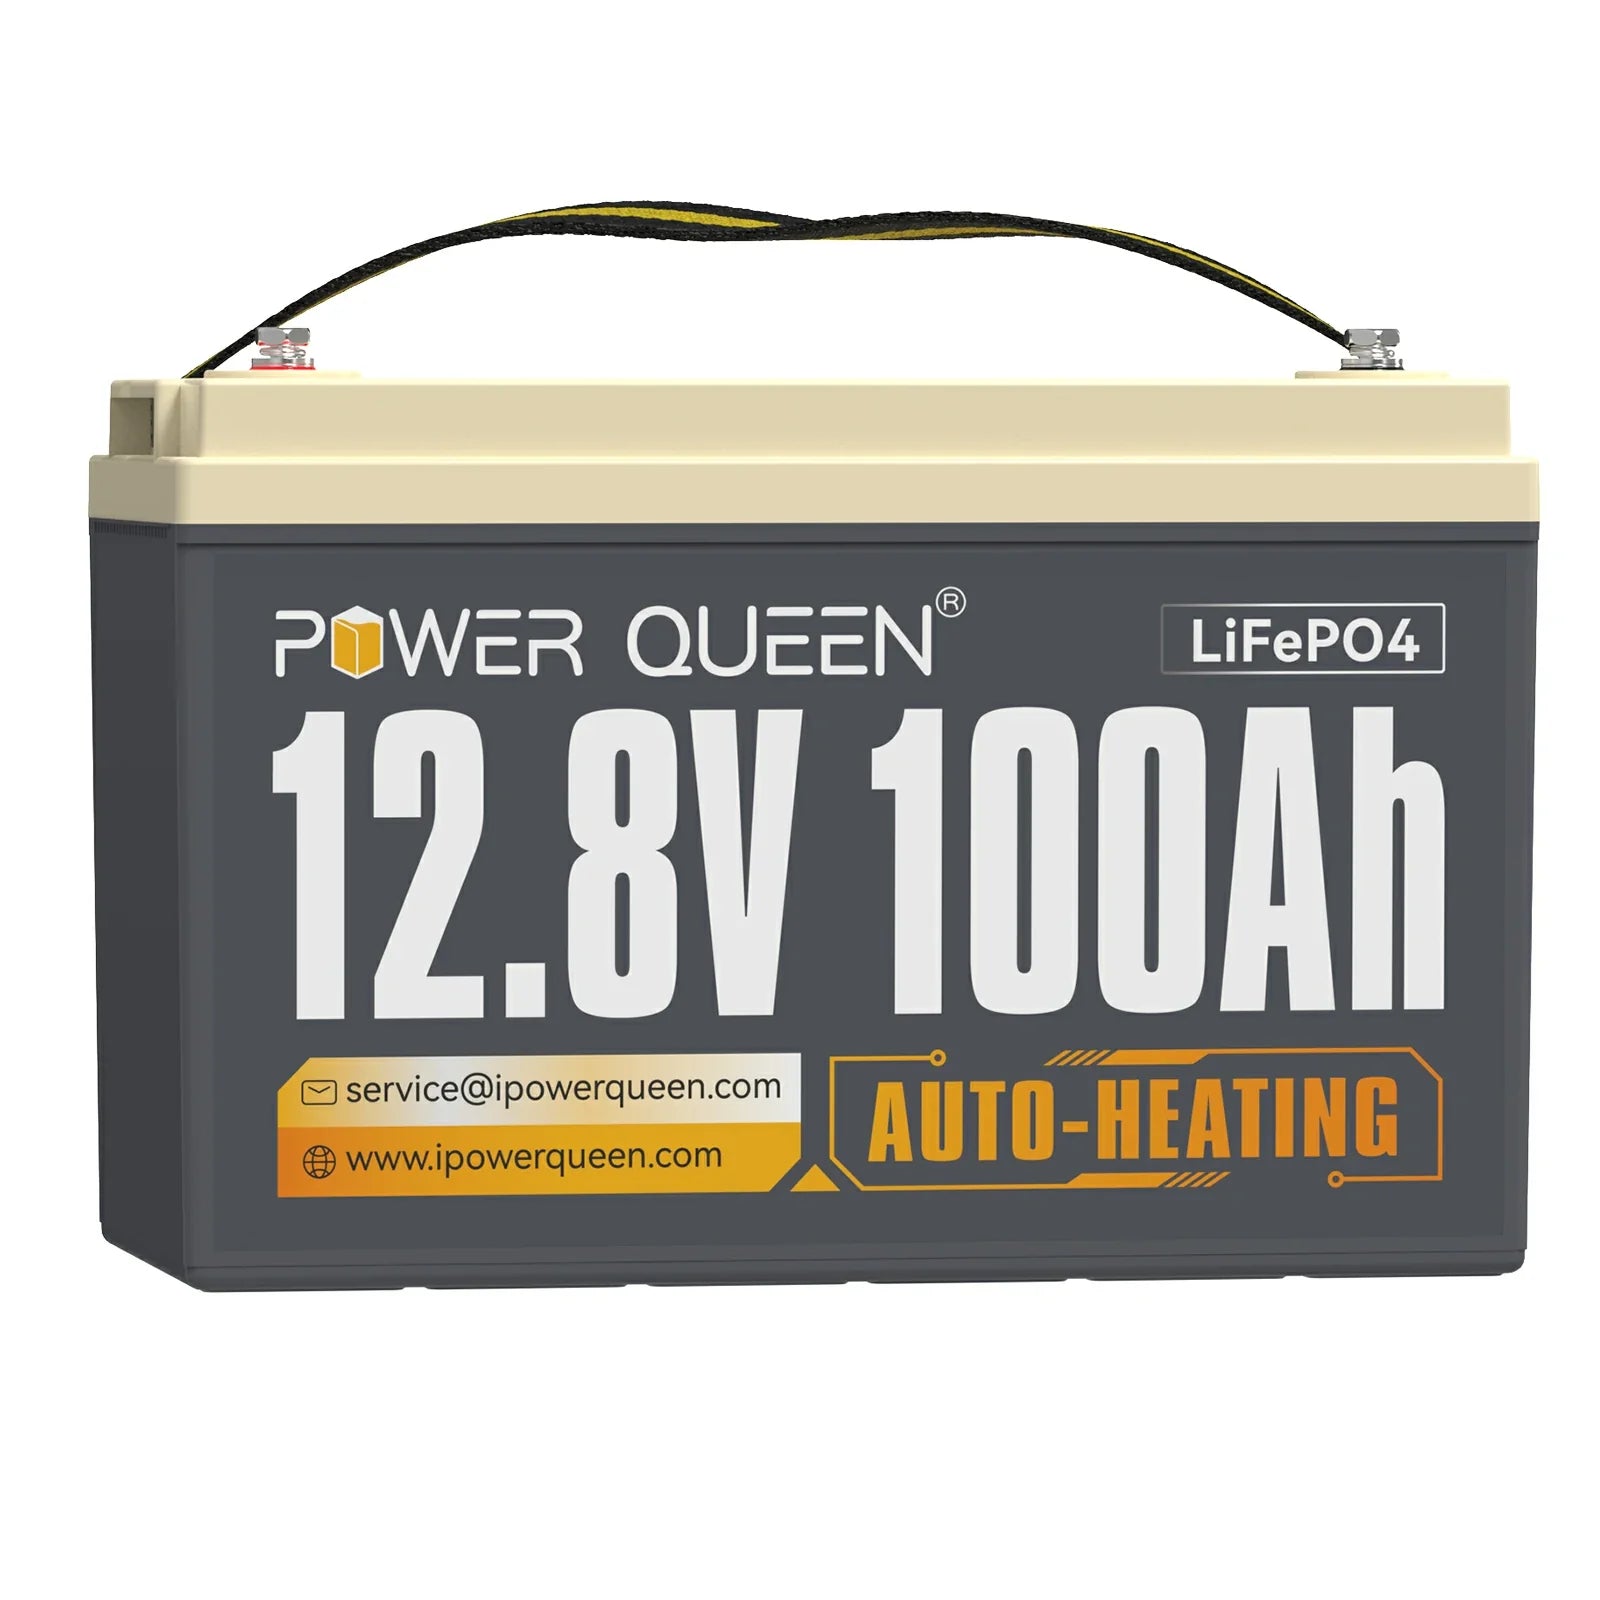 【0% IVA】Batería LiFePO4 autocalentable Power Queen de 12 V y 100 Ah, BMS integrado de 100 A